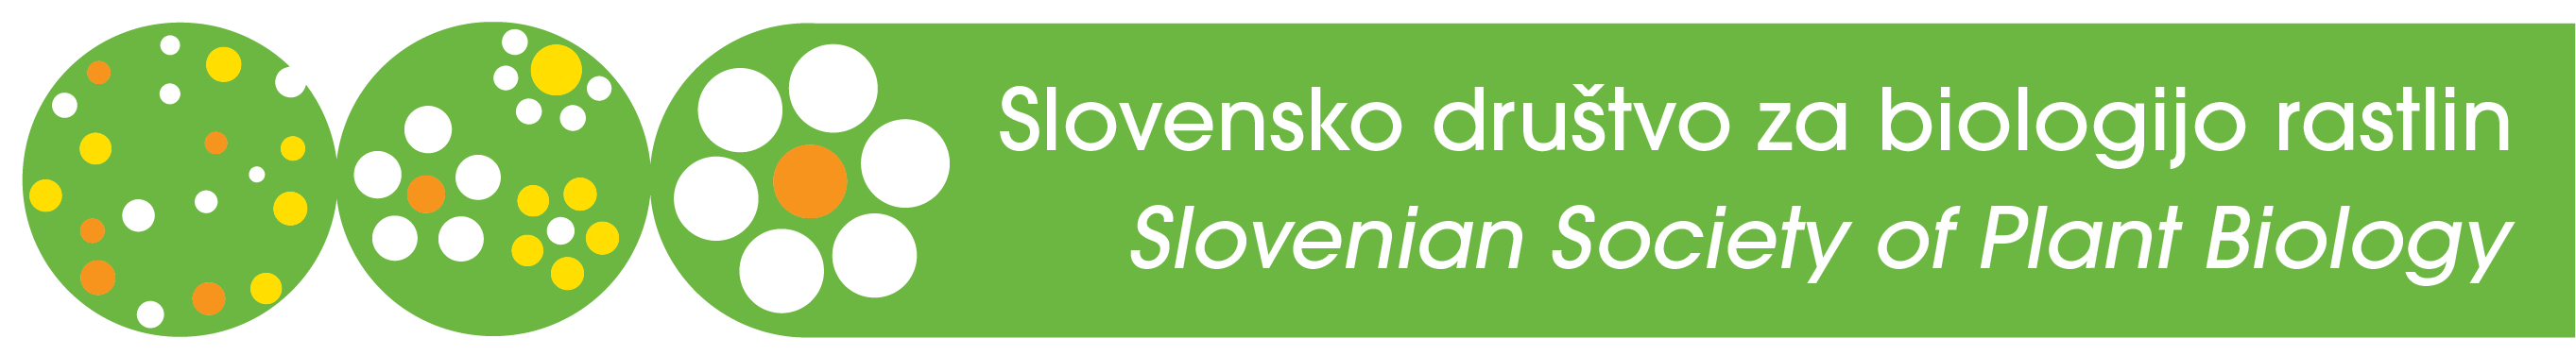 Slovensko društvo za biologijo rastlin